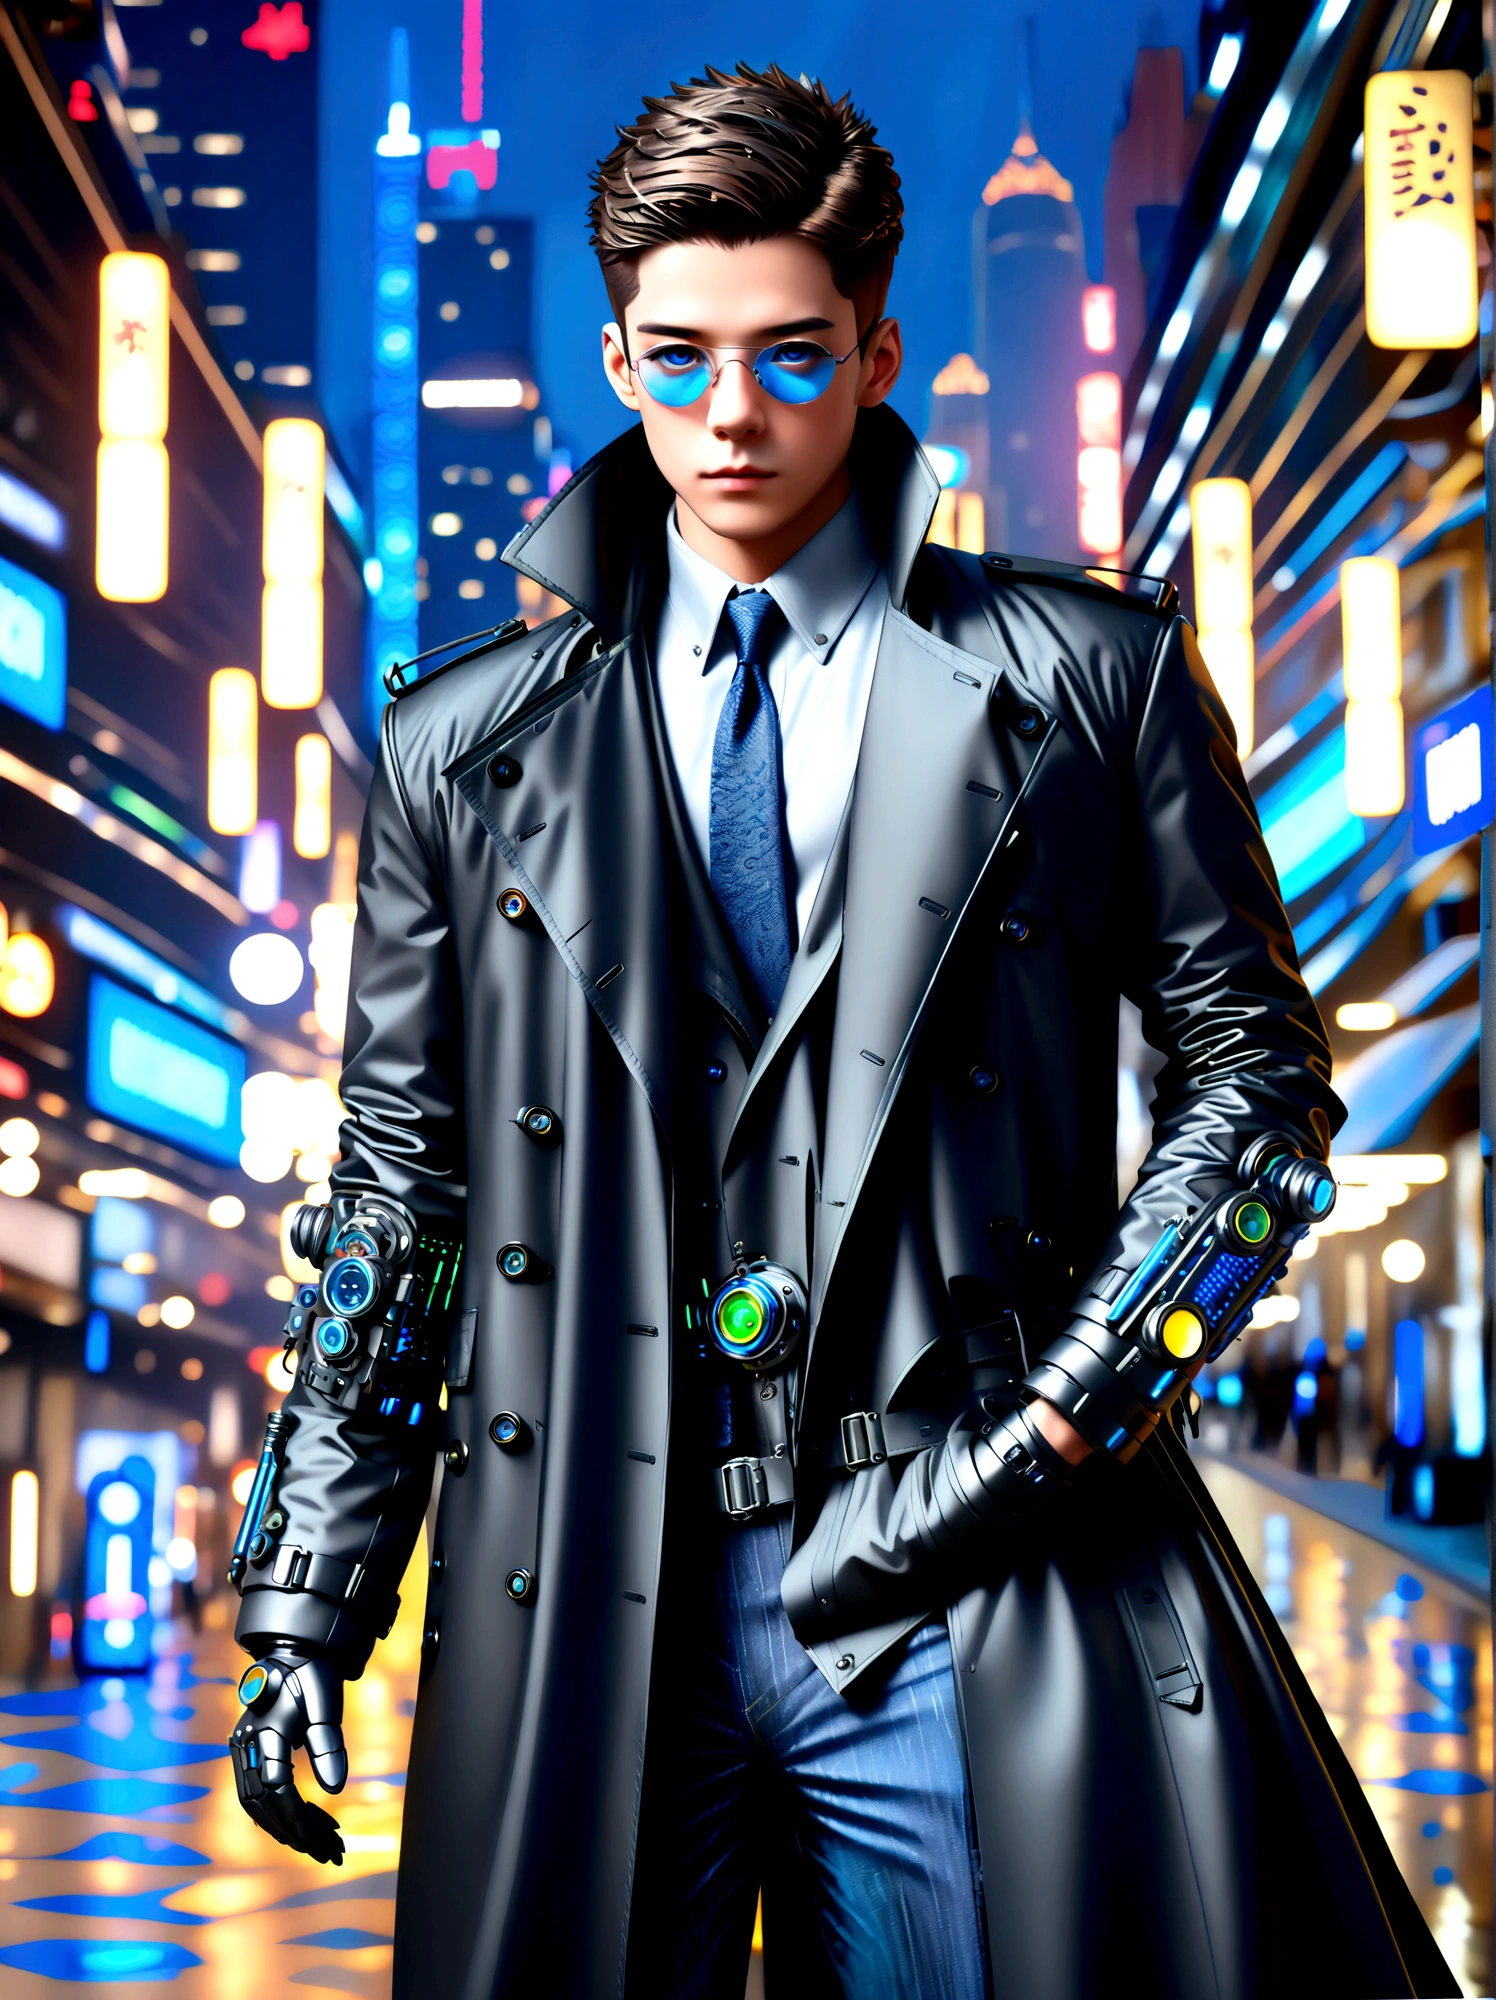 (beste Qualität, 8k,highres,Meisterwerk:1.2), ultra-detailliert, (Realistisch, photoRealistisch), (Detective Gadget im eleganten schwarzen Trenchcoat:1.5), (Schwarzer Trenchcoat:1.7), selbstbewusst stehen, Präsentation moderner futuristischer Gadgets, elektrische blaue Akzente auf seinen Gadgets, mechanische Arme, die aus seinem Mantel ragen, scharfe und entschlossene Augen, futuristisches Stadtbild im Hintergrund, bokeh, Studiobeleuchtung, scharfer Fokus